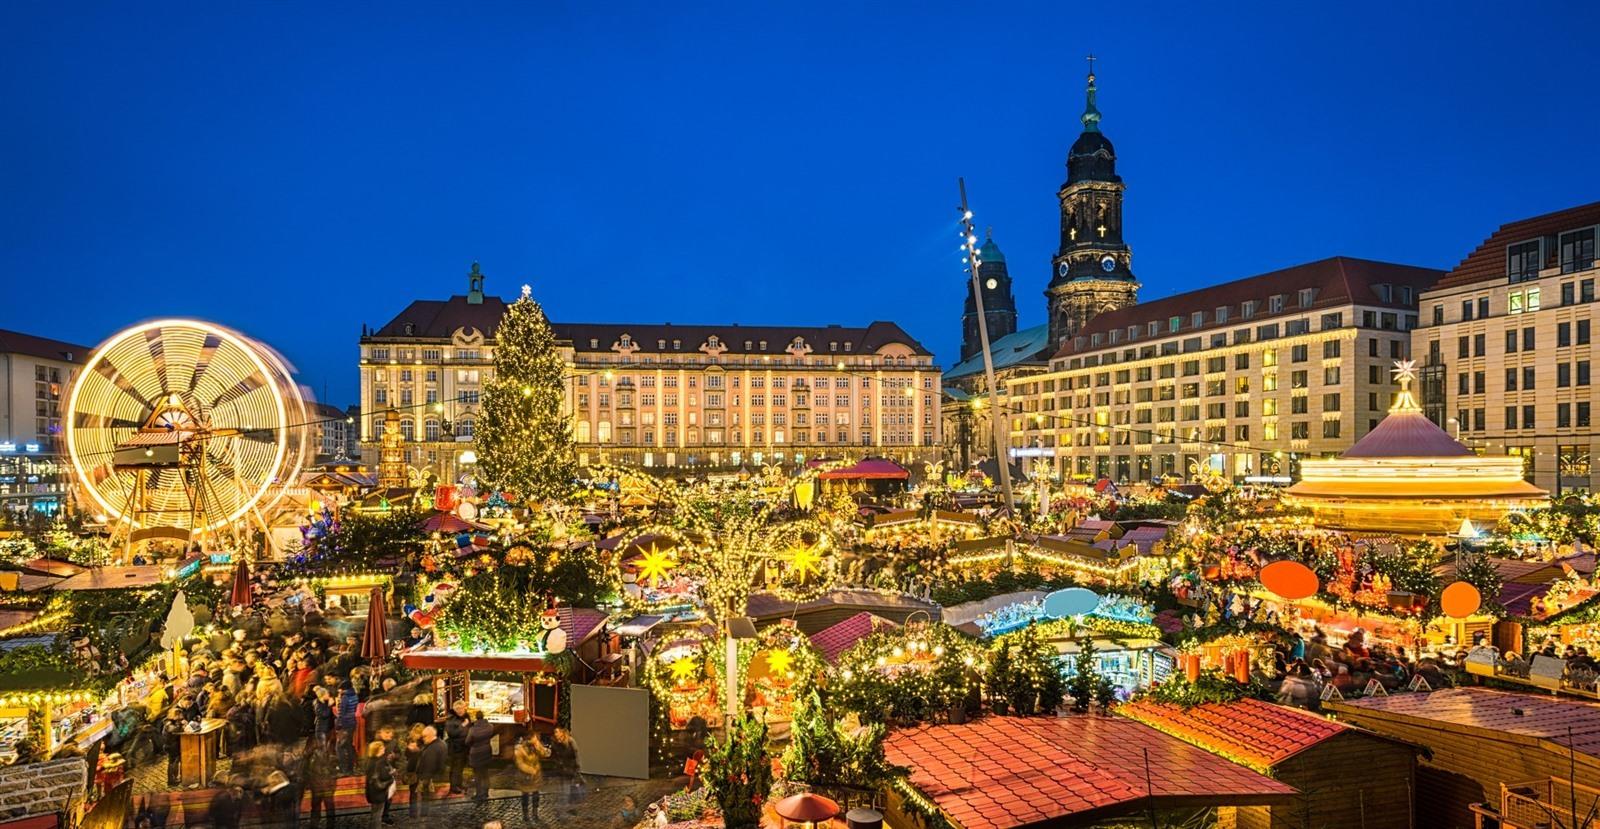 Kerstmarkten Duitsland 2021 Corona De 11 Mooiste Kerstmarkten In Duitsland 2021 Datums Openingsuren